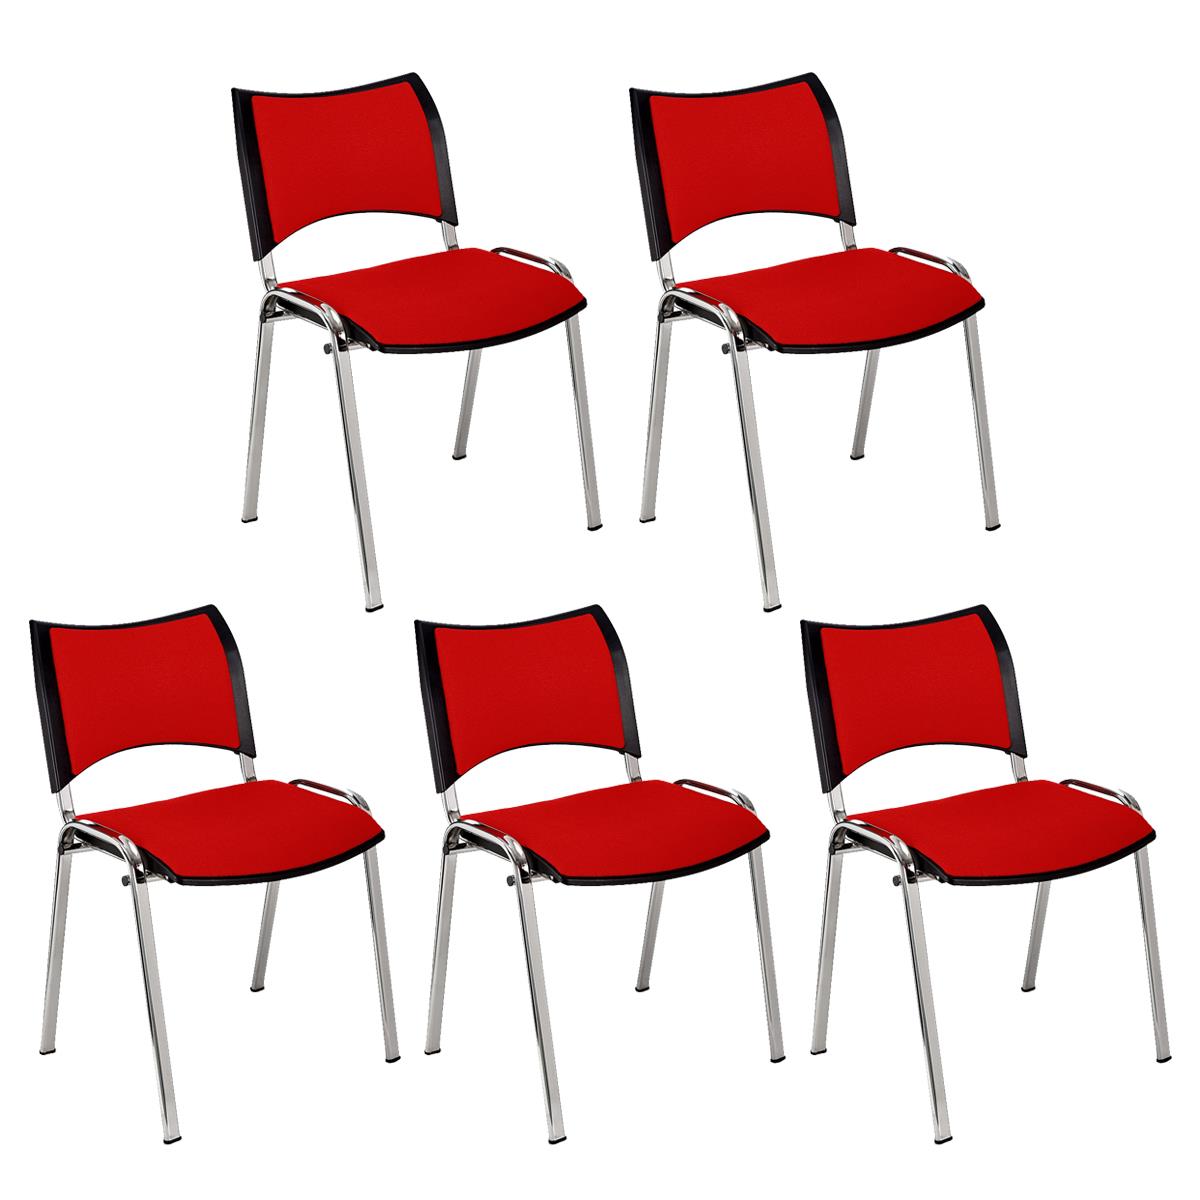 Lote 5 Cadeiras de Visita ROMEL, Prática e Empilhável, Pernas Cromadas, Em Pano, Vermelho